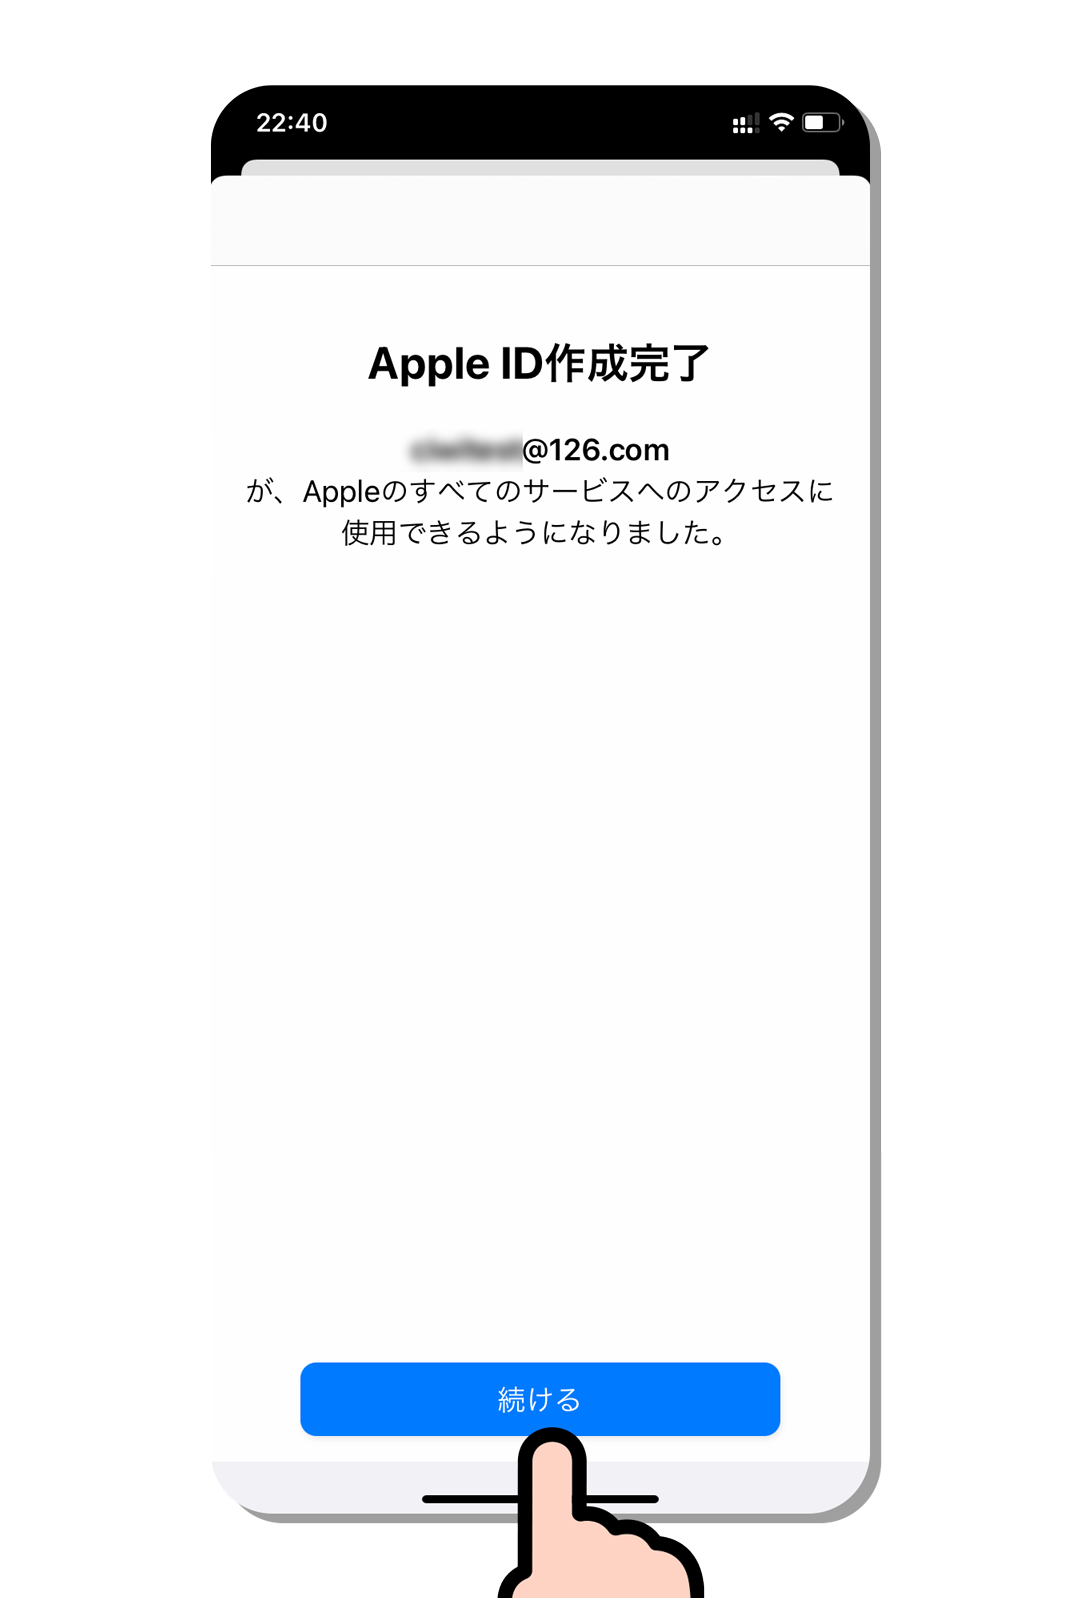 苹果付款支付宝方式被拒绝_韩国苹果id付款方式怎么填_手机注册韩国苹果id